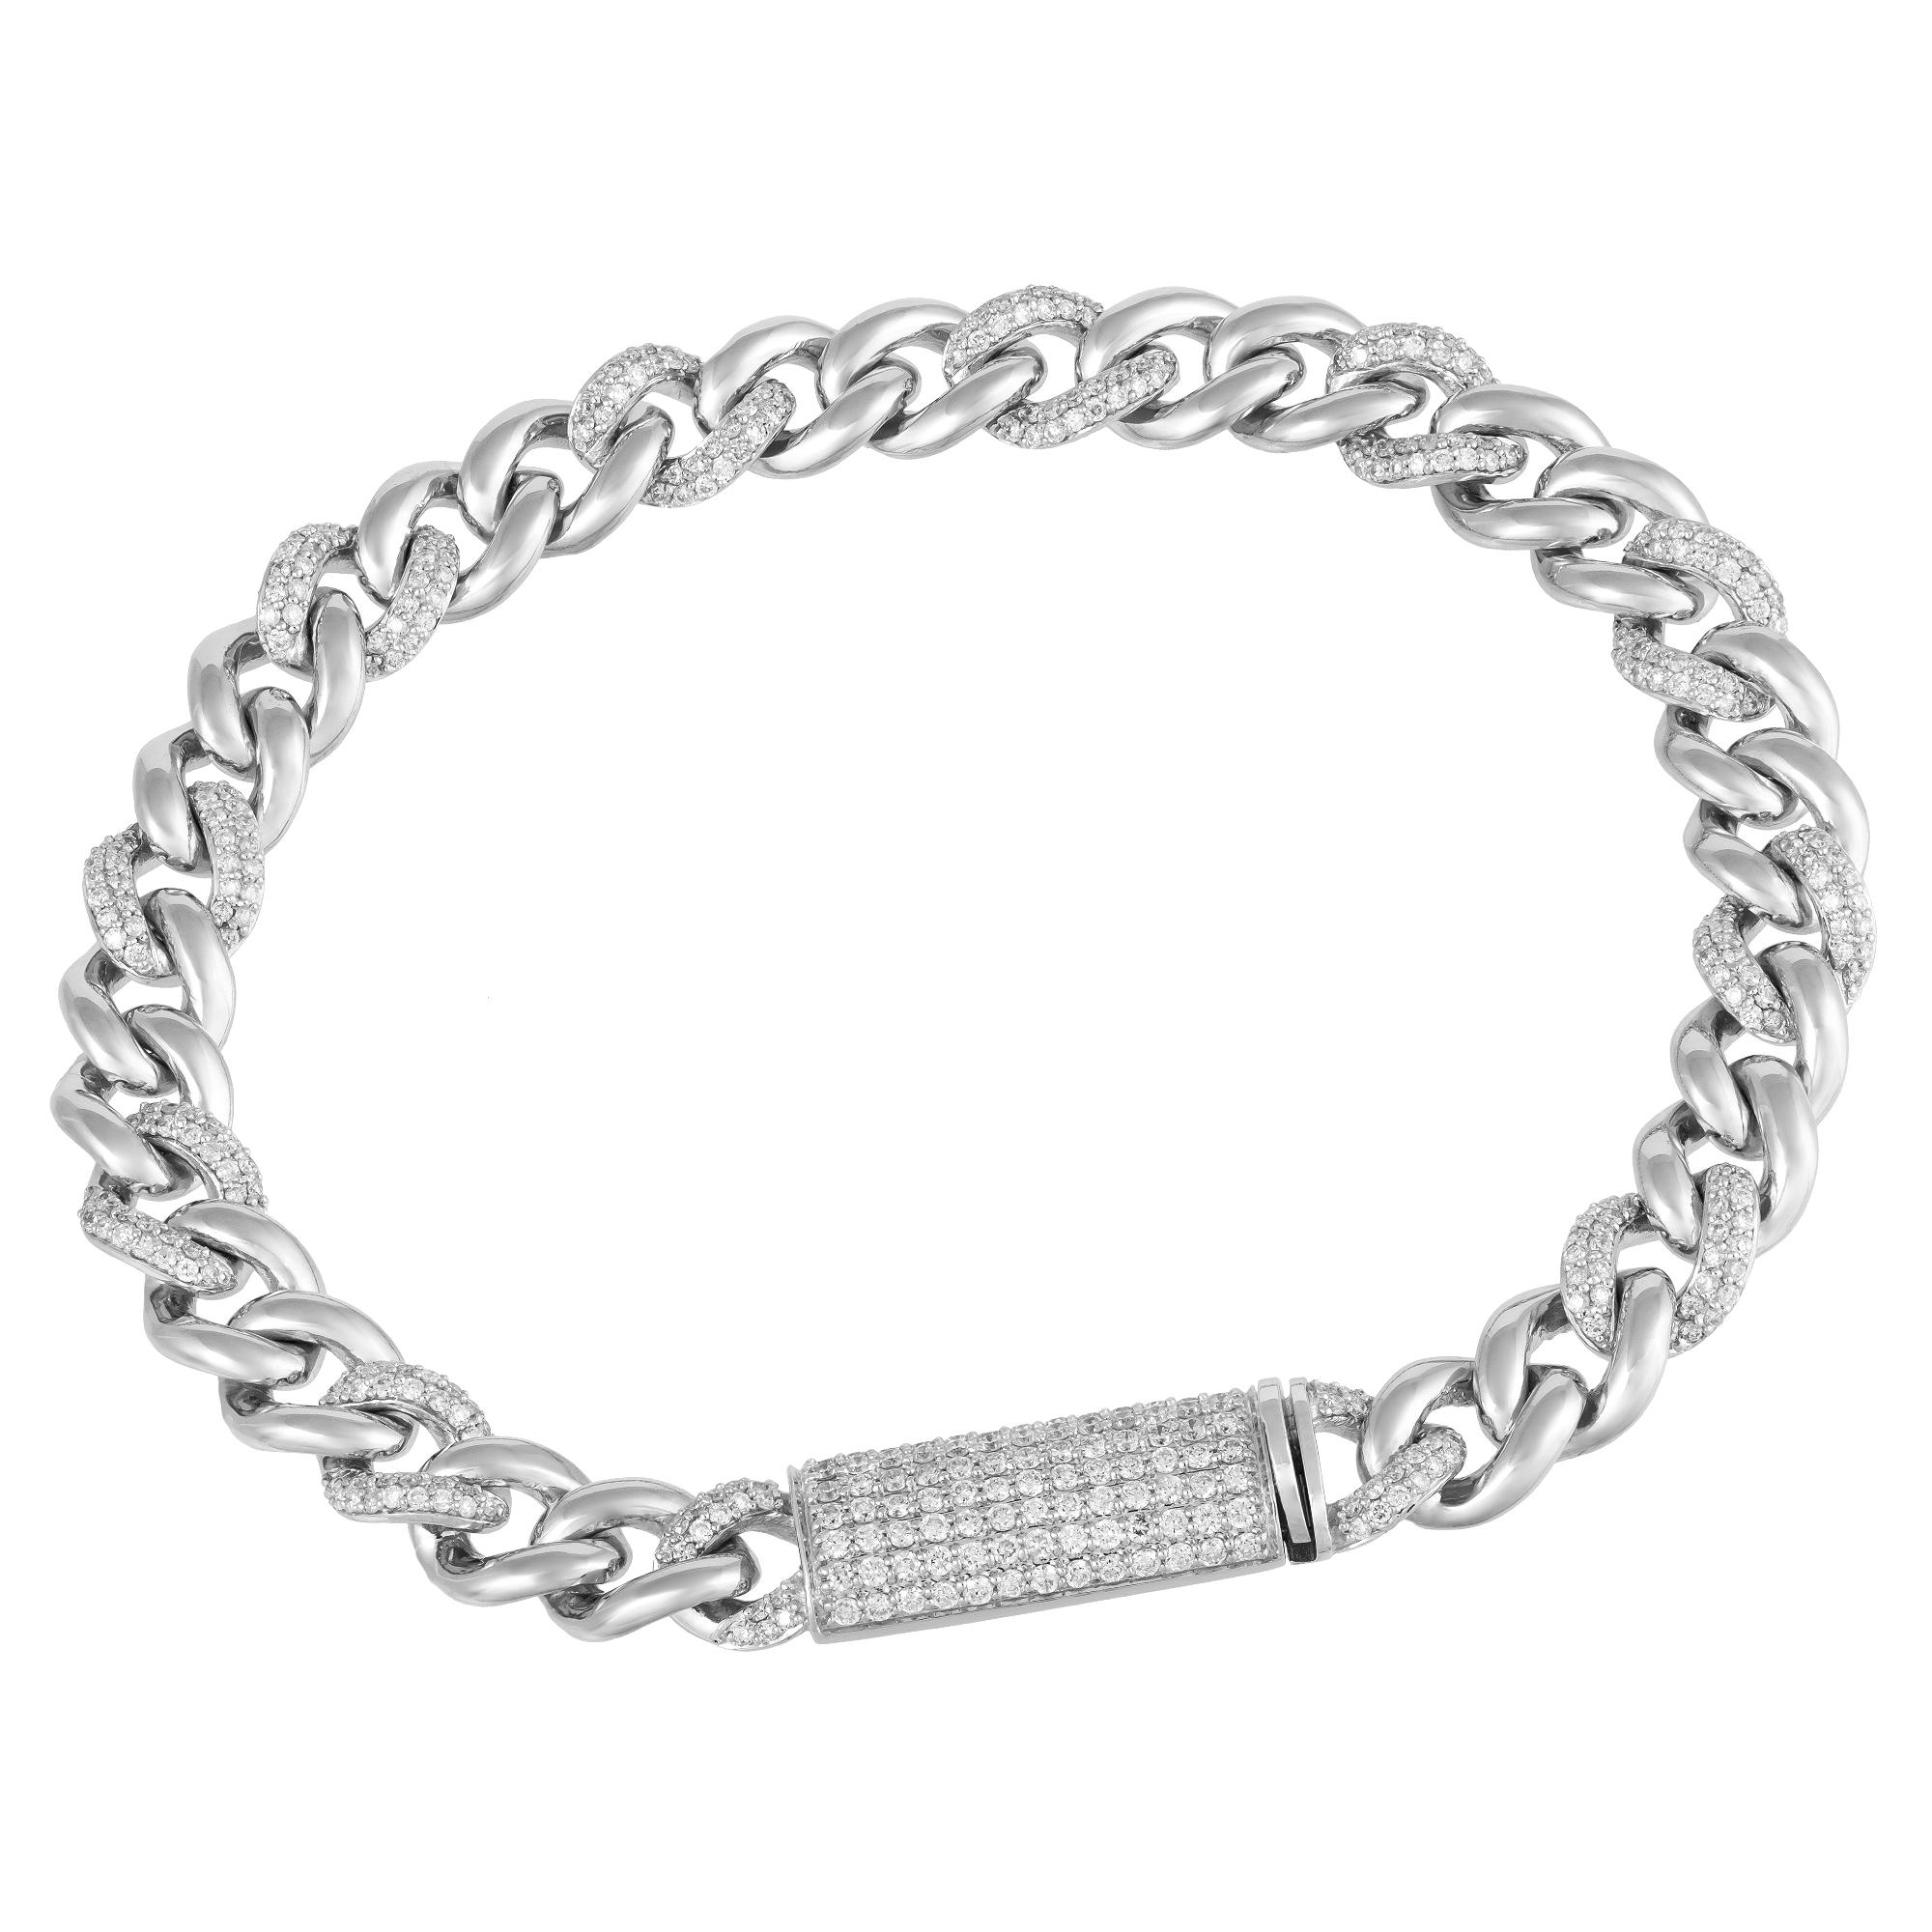 Modern Chain White Gold 18K Bracelet Diamond for Her For Sale